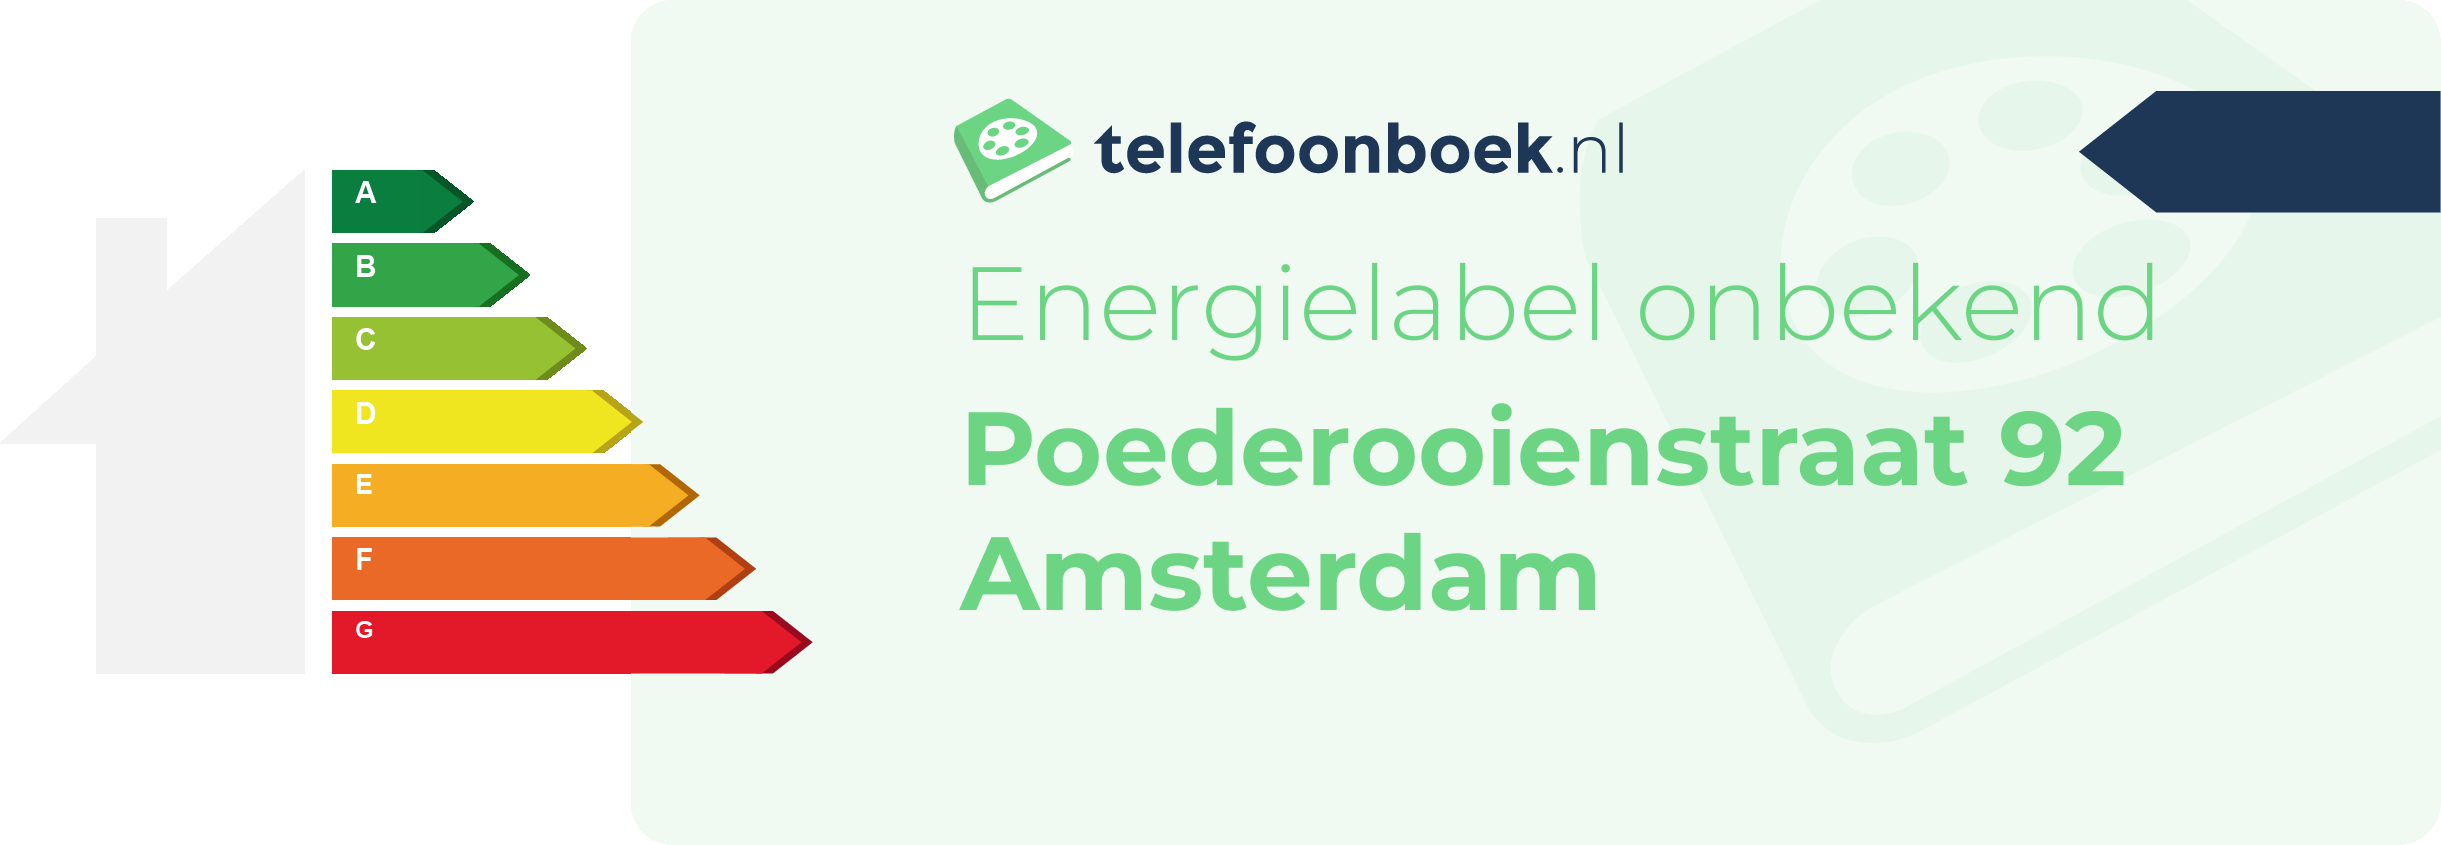 Energielabel Poederooienstraat 92 Amsterdam